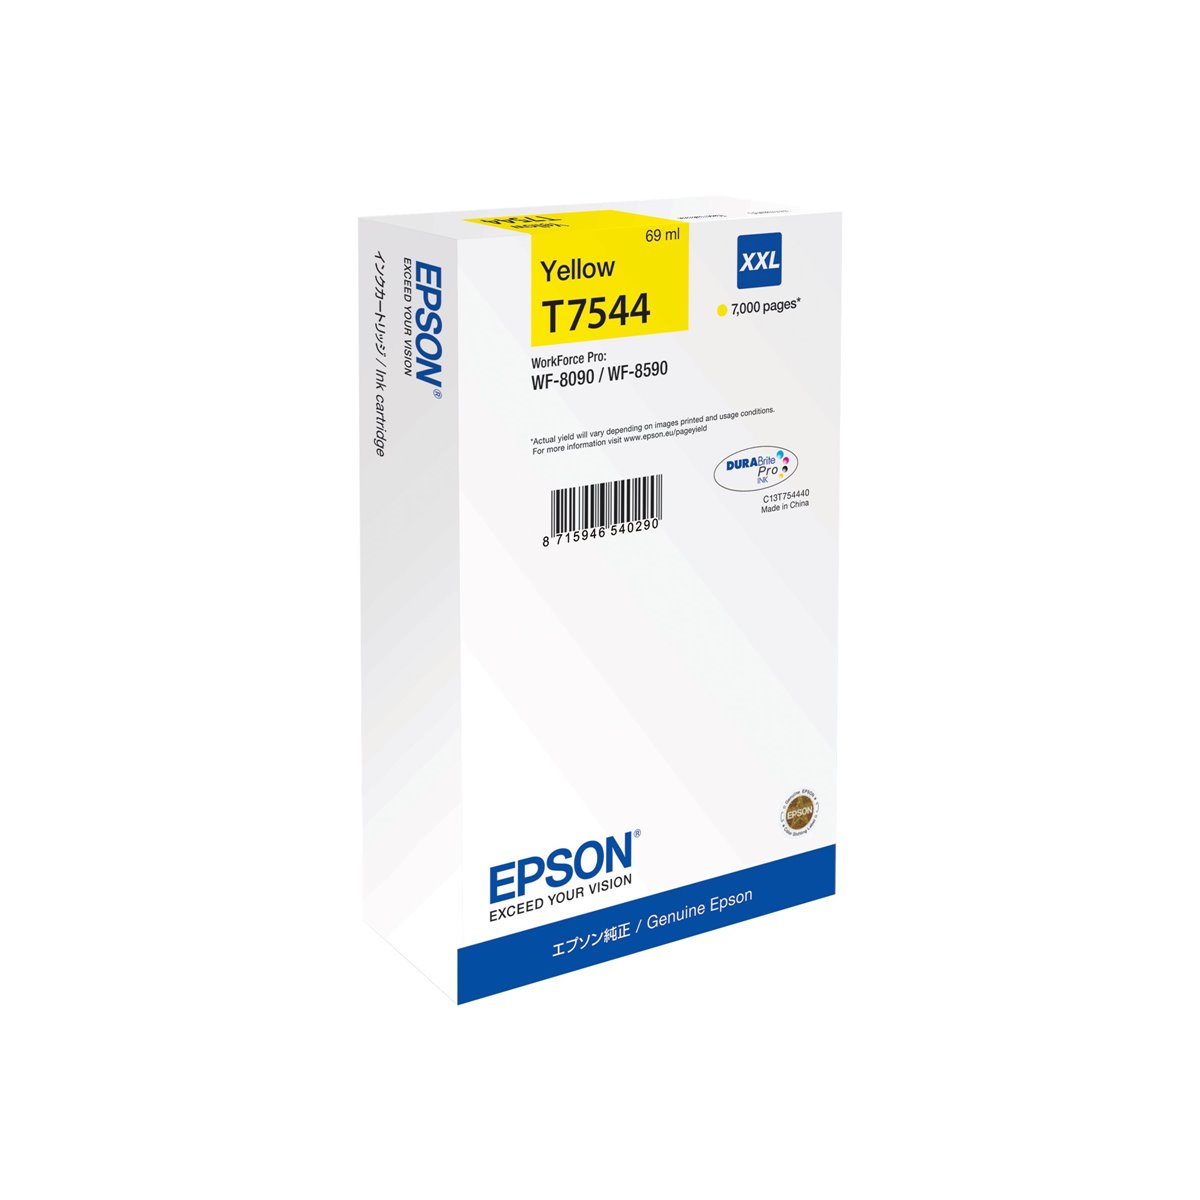 EPSON WF-8090 - WF-8590 Ink Cartridge XXL Yellow